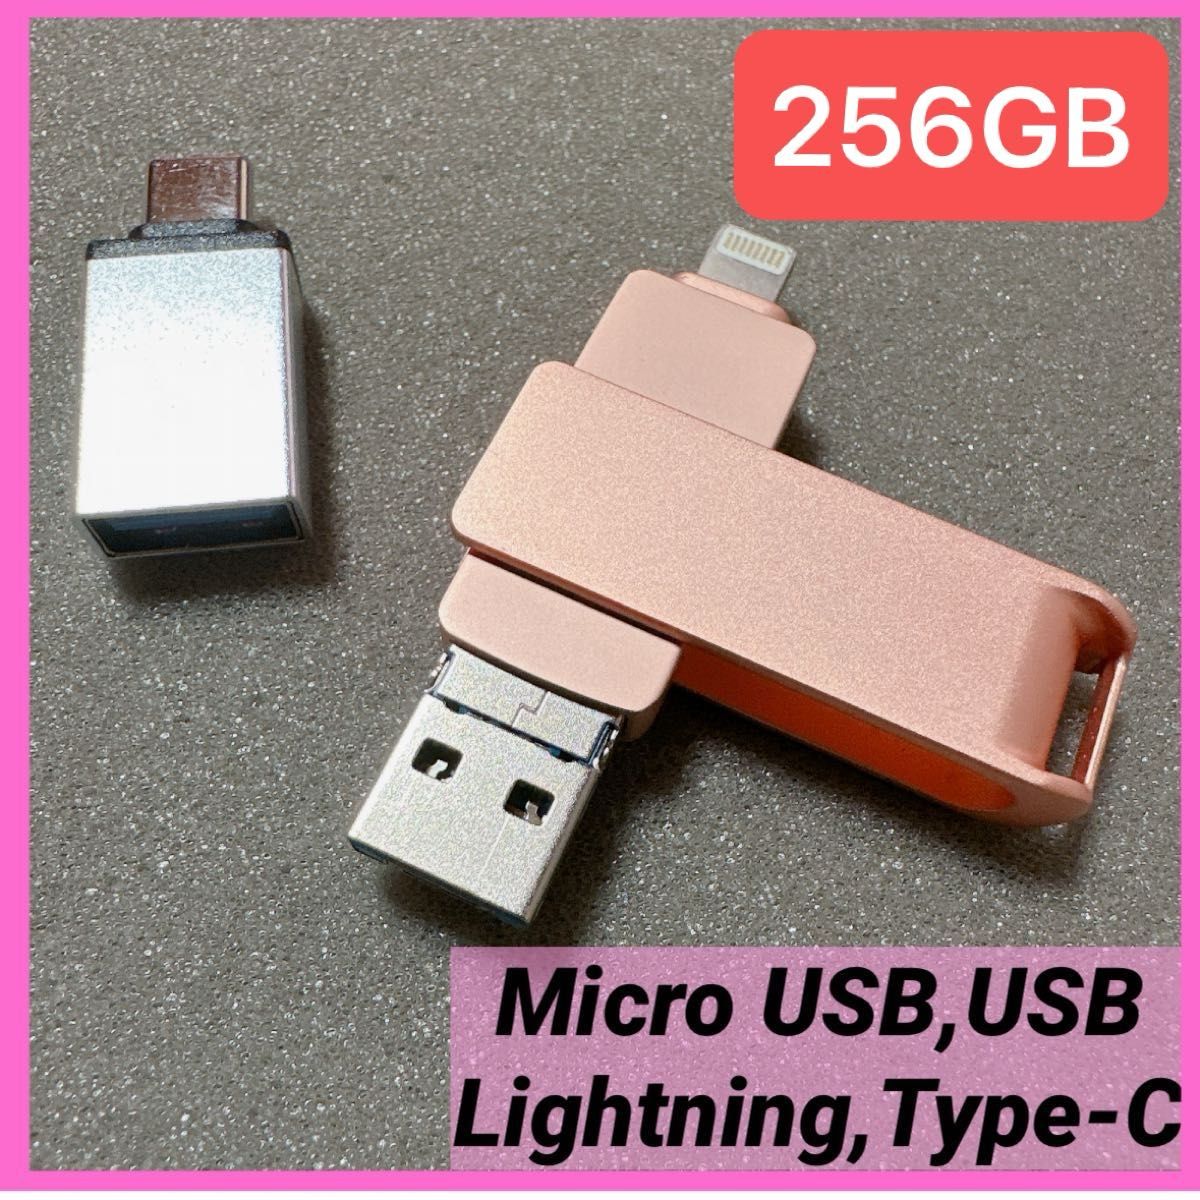 4in1USBメモリー256GB【多機能データ管理】iPhone対応USBメモリ フラッシュドライブ 大容量 高速USB 3.0